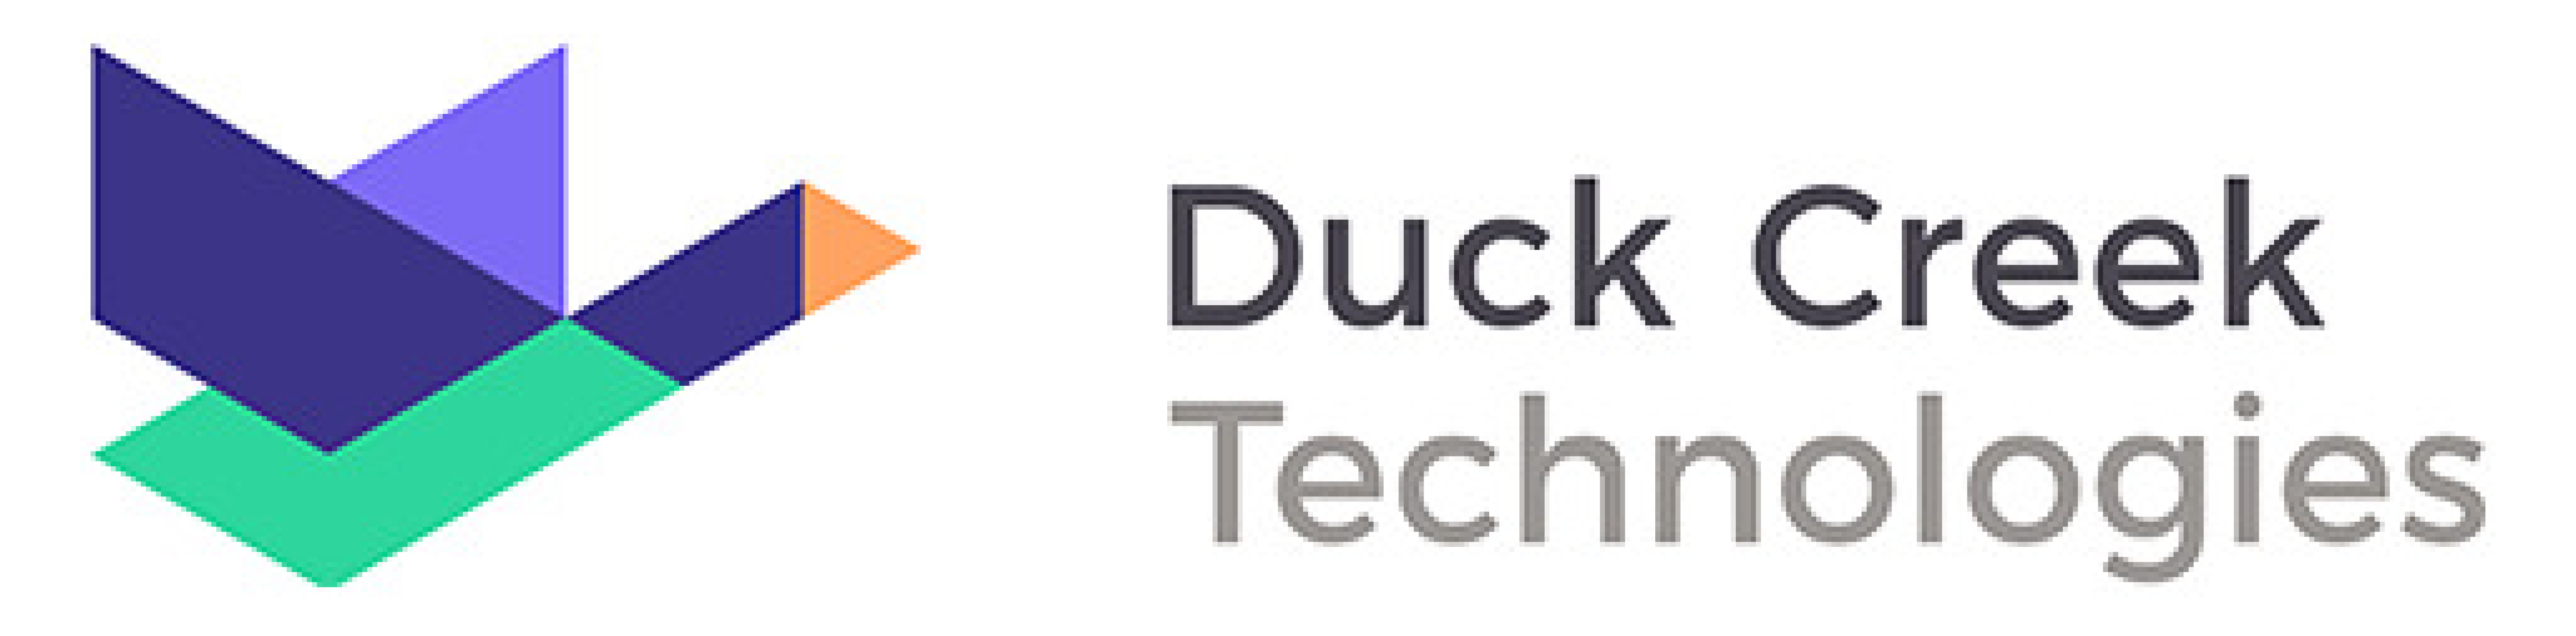 Logotipo de Duck Creek.